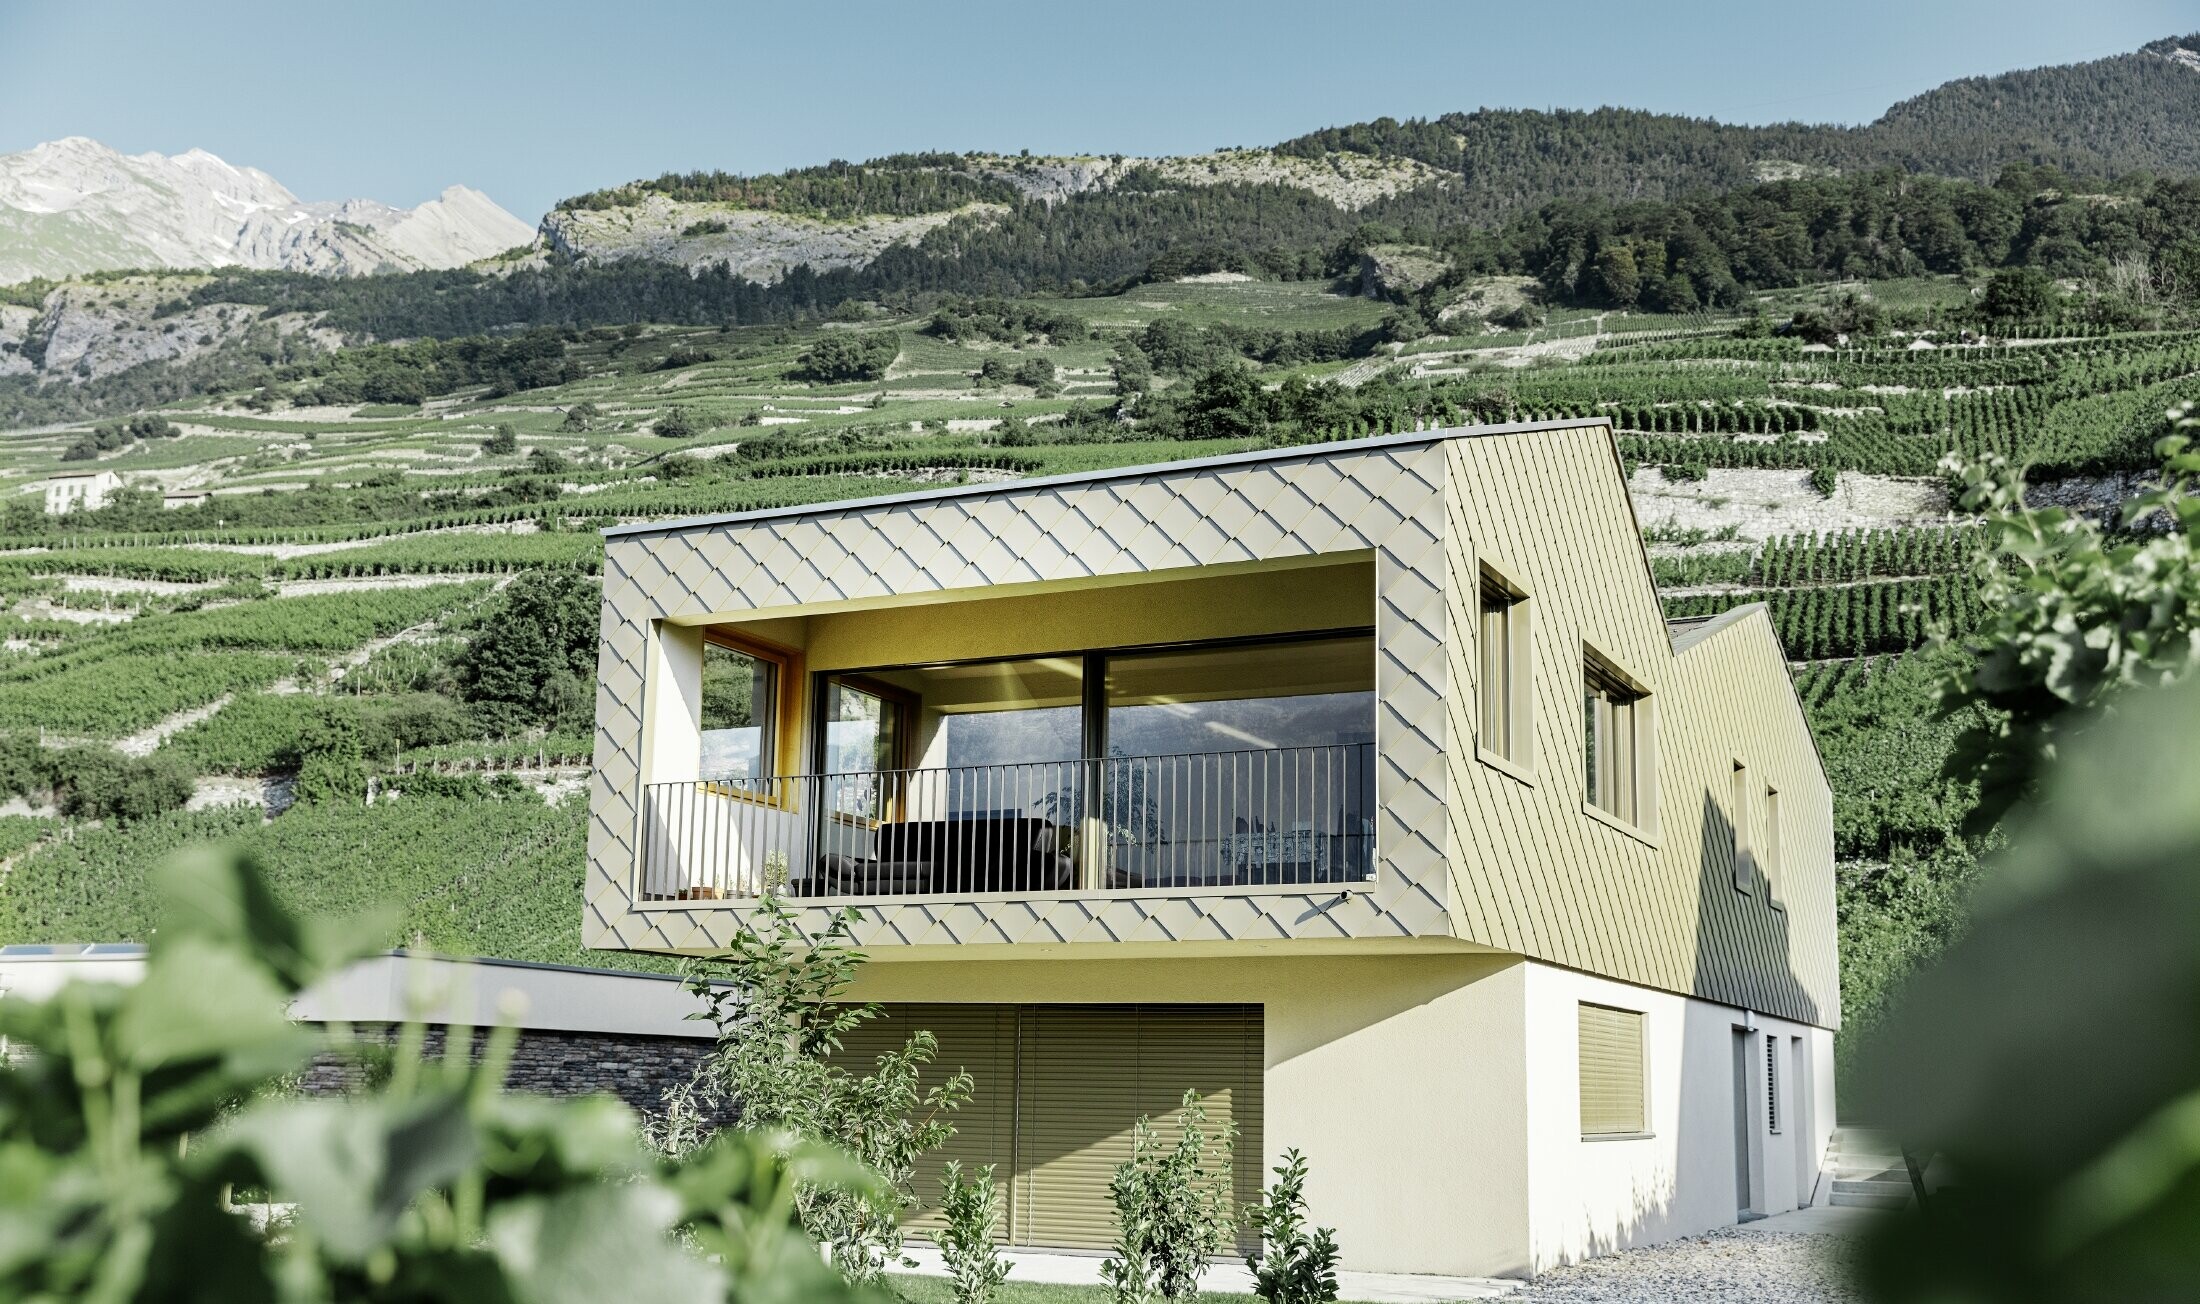 Moderna obiteljska kuće usred vinograda doline Rhône s 4 različite krovne površine i otvorenom galerijom s fasadom iz rombova u boji bronce